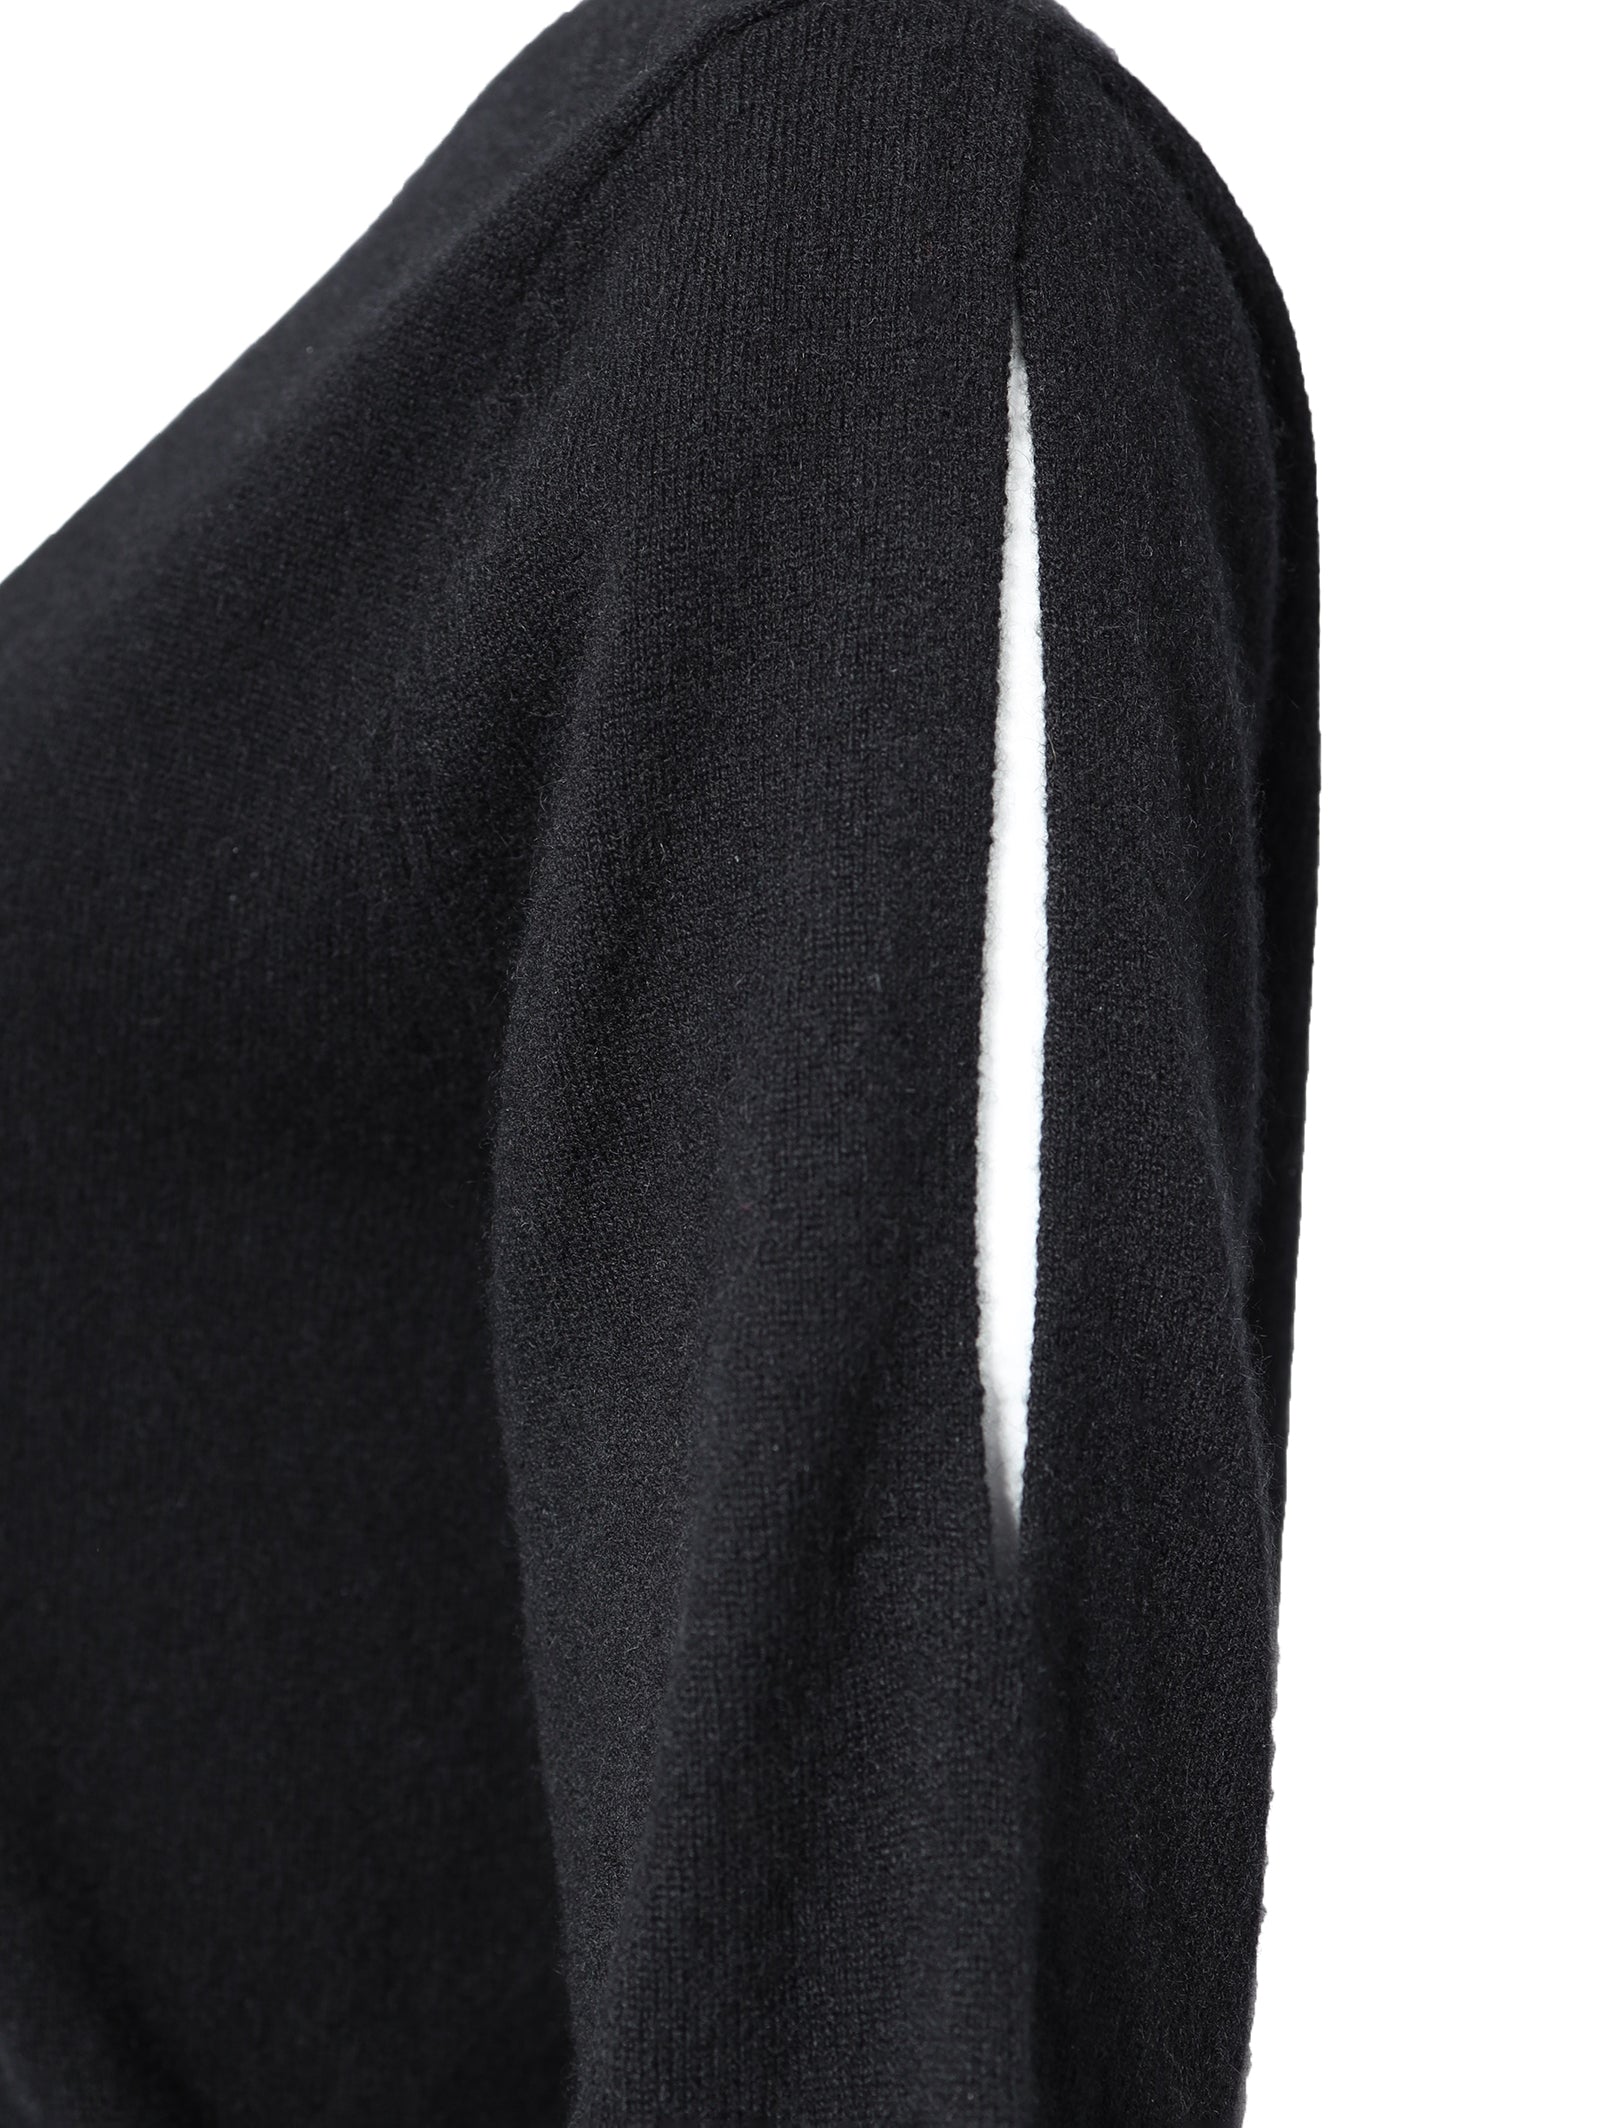 Black Cashmere Jumper With Cutout Details